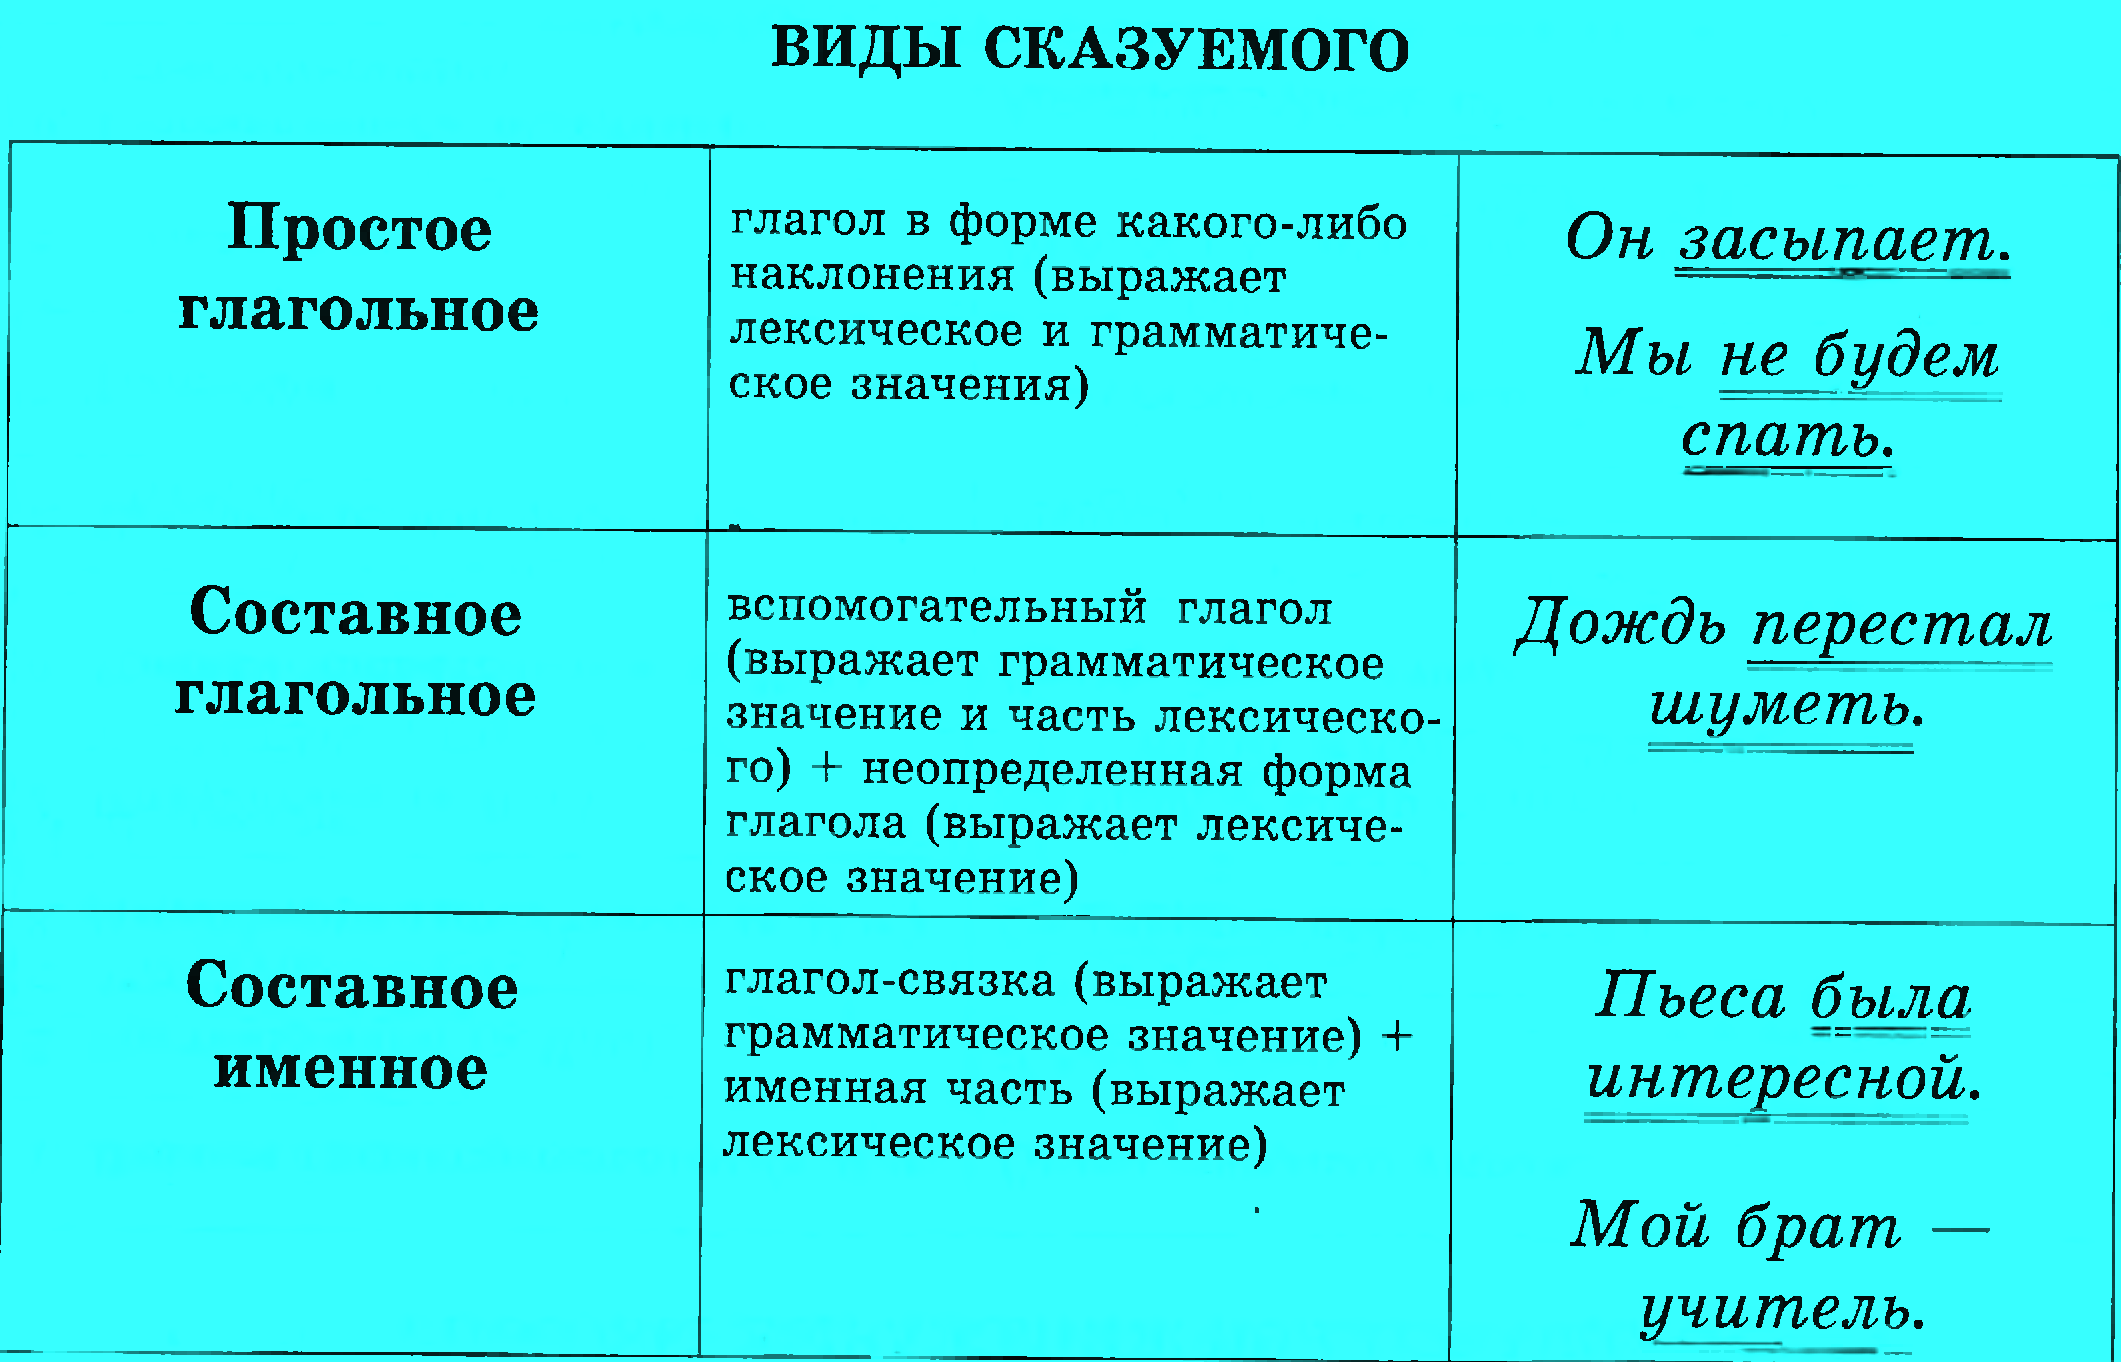 ???? члены предложения в русском языке - примеры